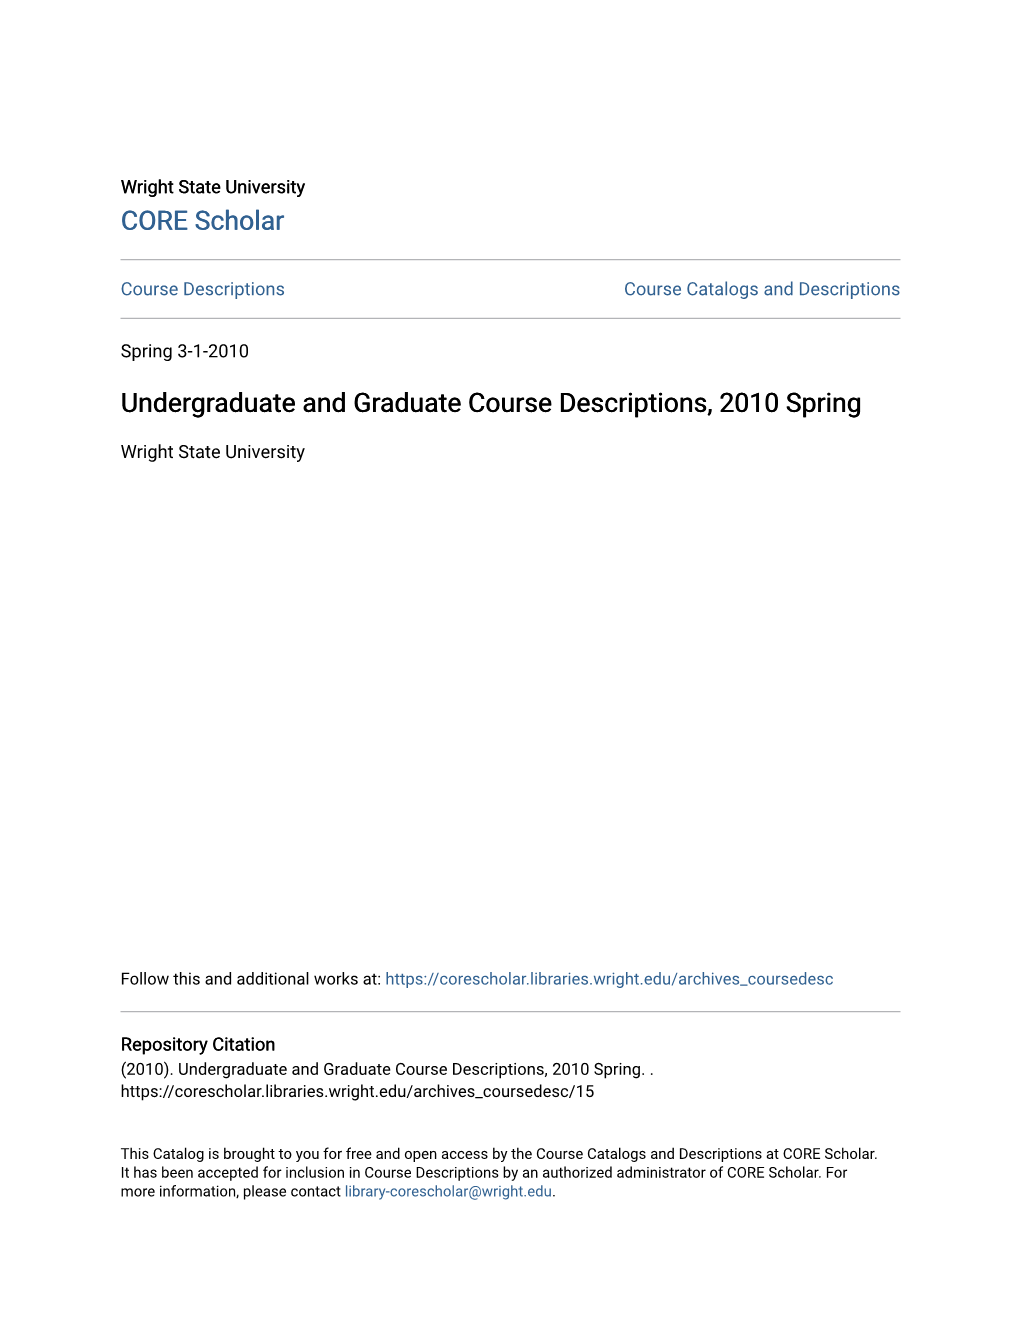 Undergraduate and Graduate Course Descriptions, 2010 Spring